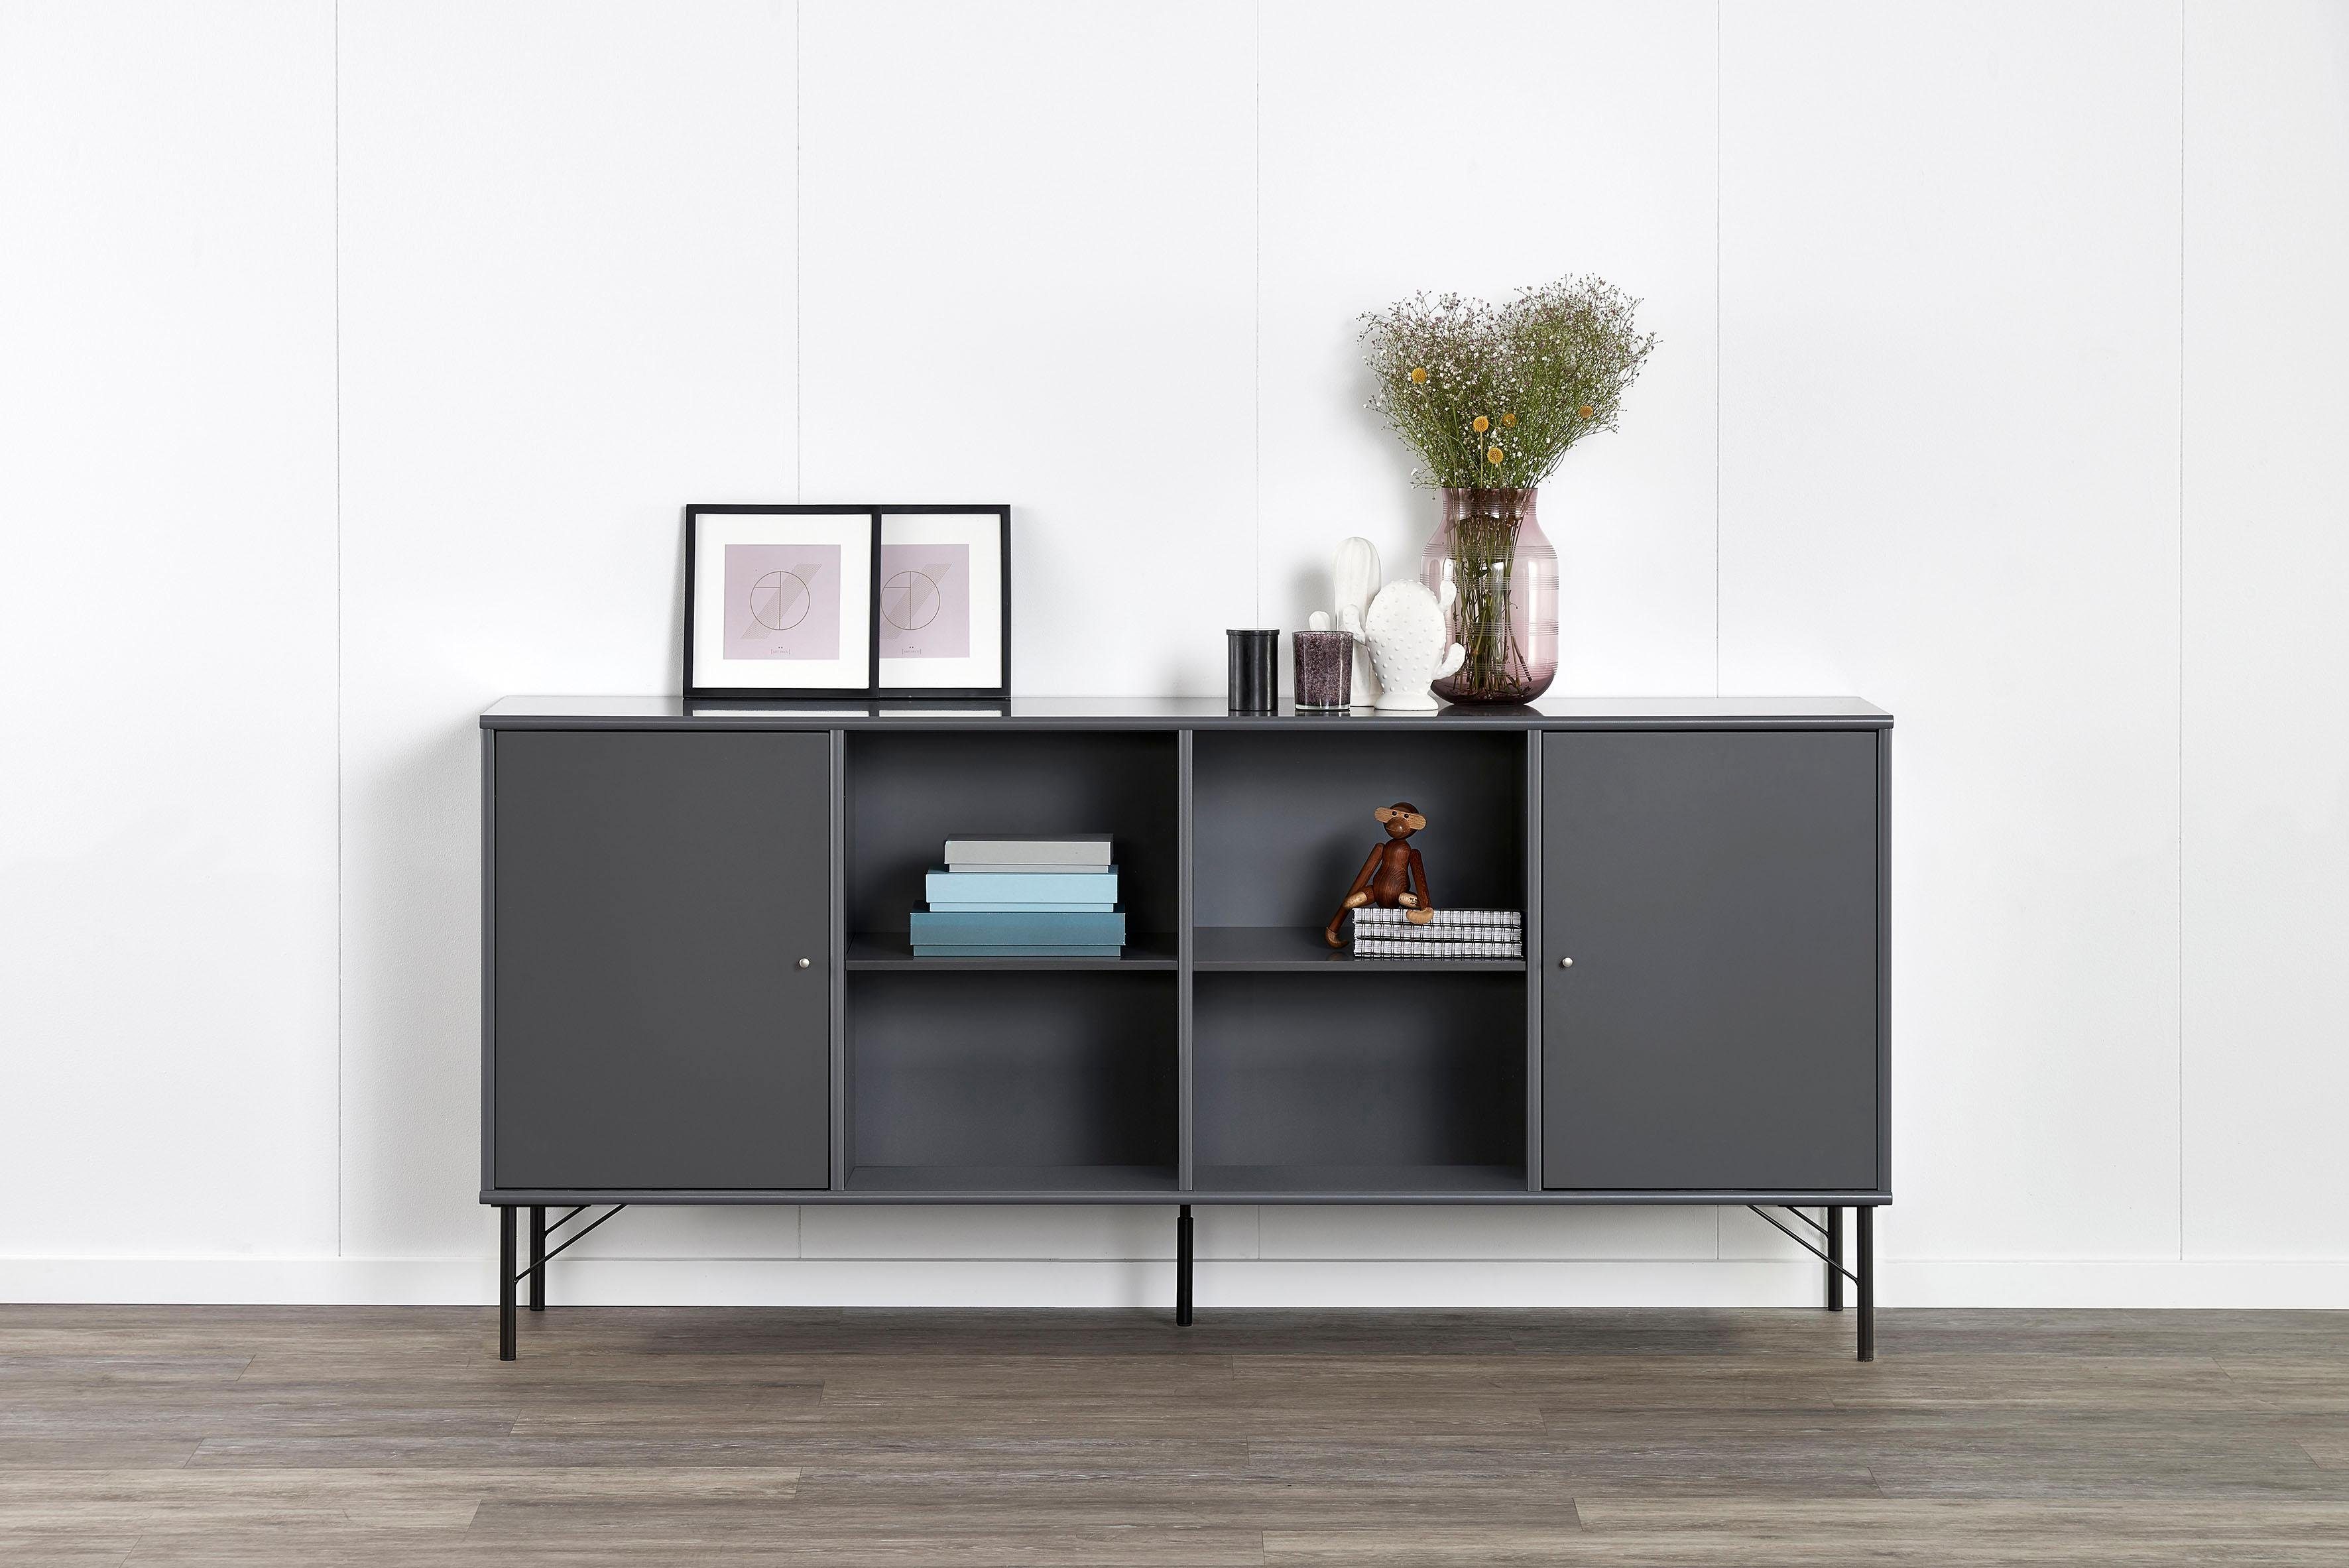 Stützfuß, Hammel Beine Höhe: Mistral, für Furniture Designmöbel 16 cm, schwarz anpassungsbar Mistral, Möbelfuß